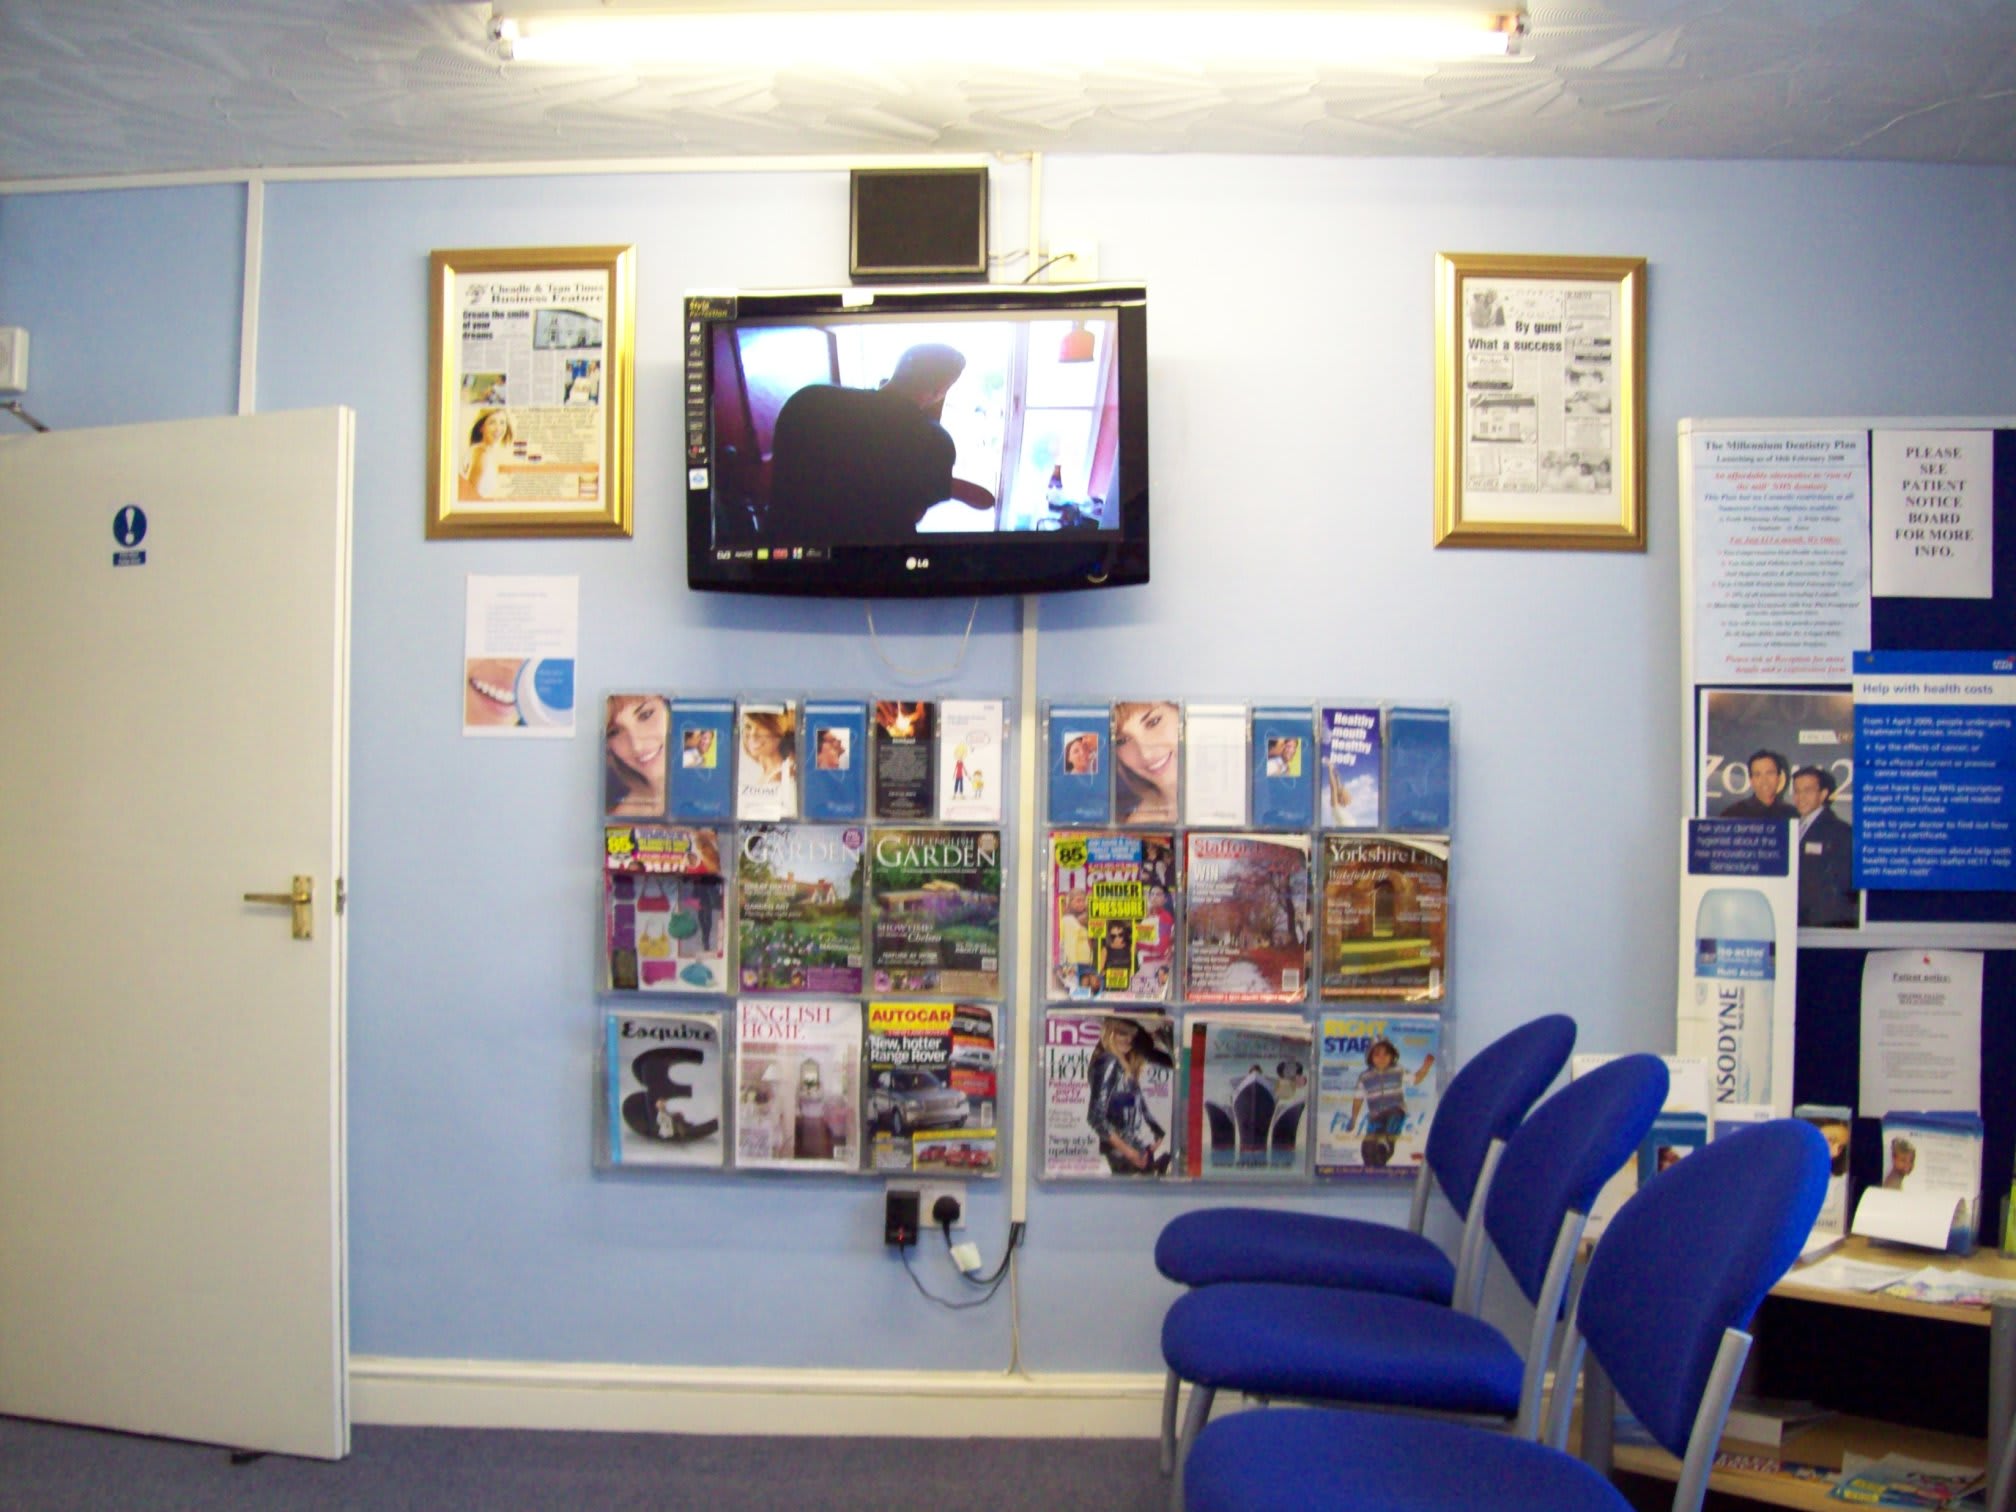 Millennium Dentistry Stoke-On-Trent 01538 755153